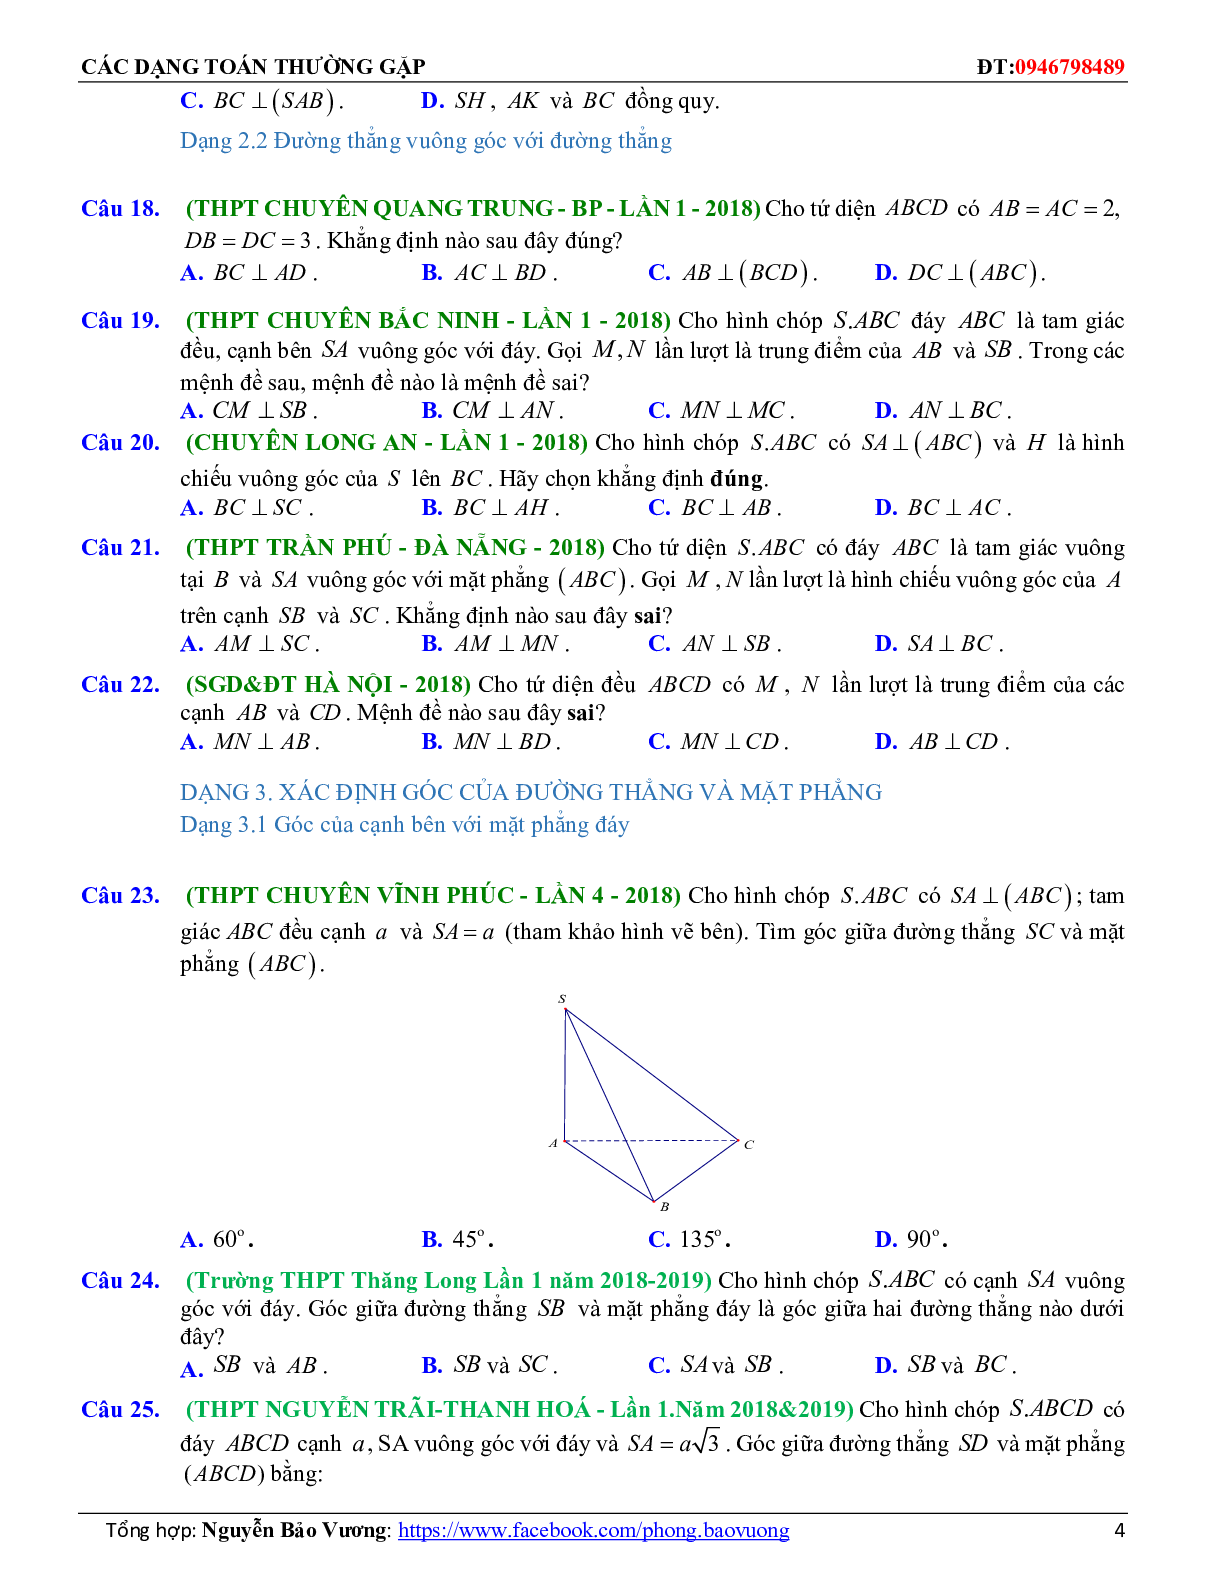 100 Bài tập trắc nghiệm đường thẳng vuông góc với mặt phẳng có đáp án và lời giải 2023 (trang 4)